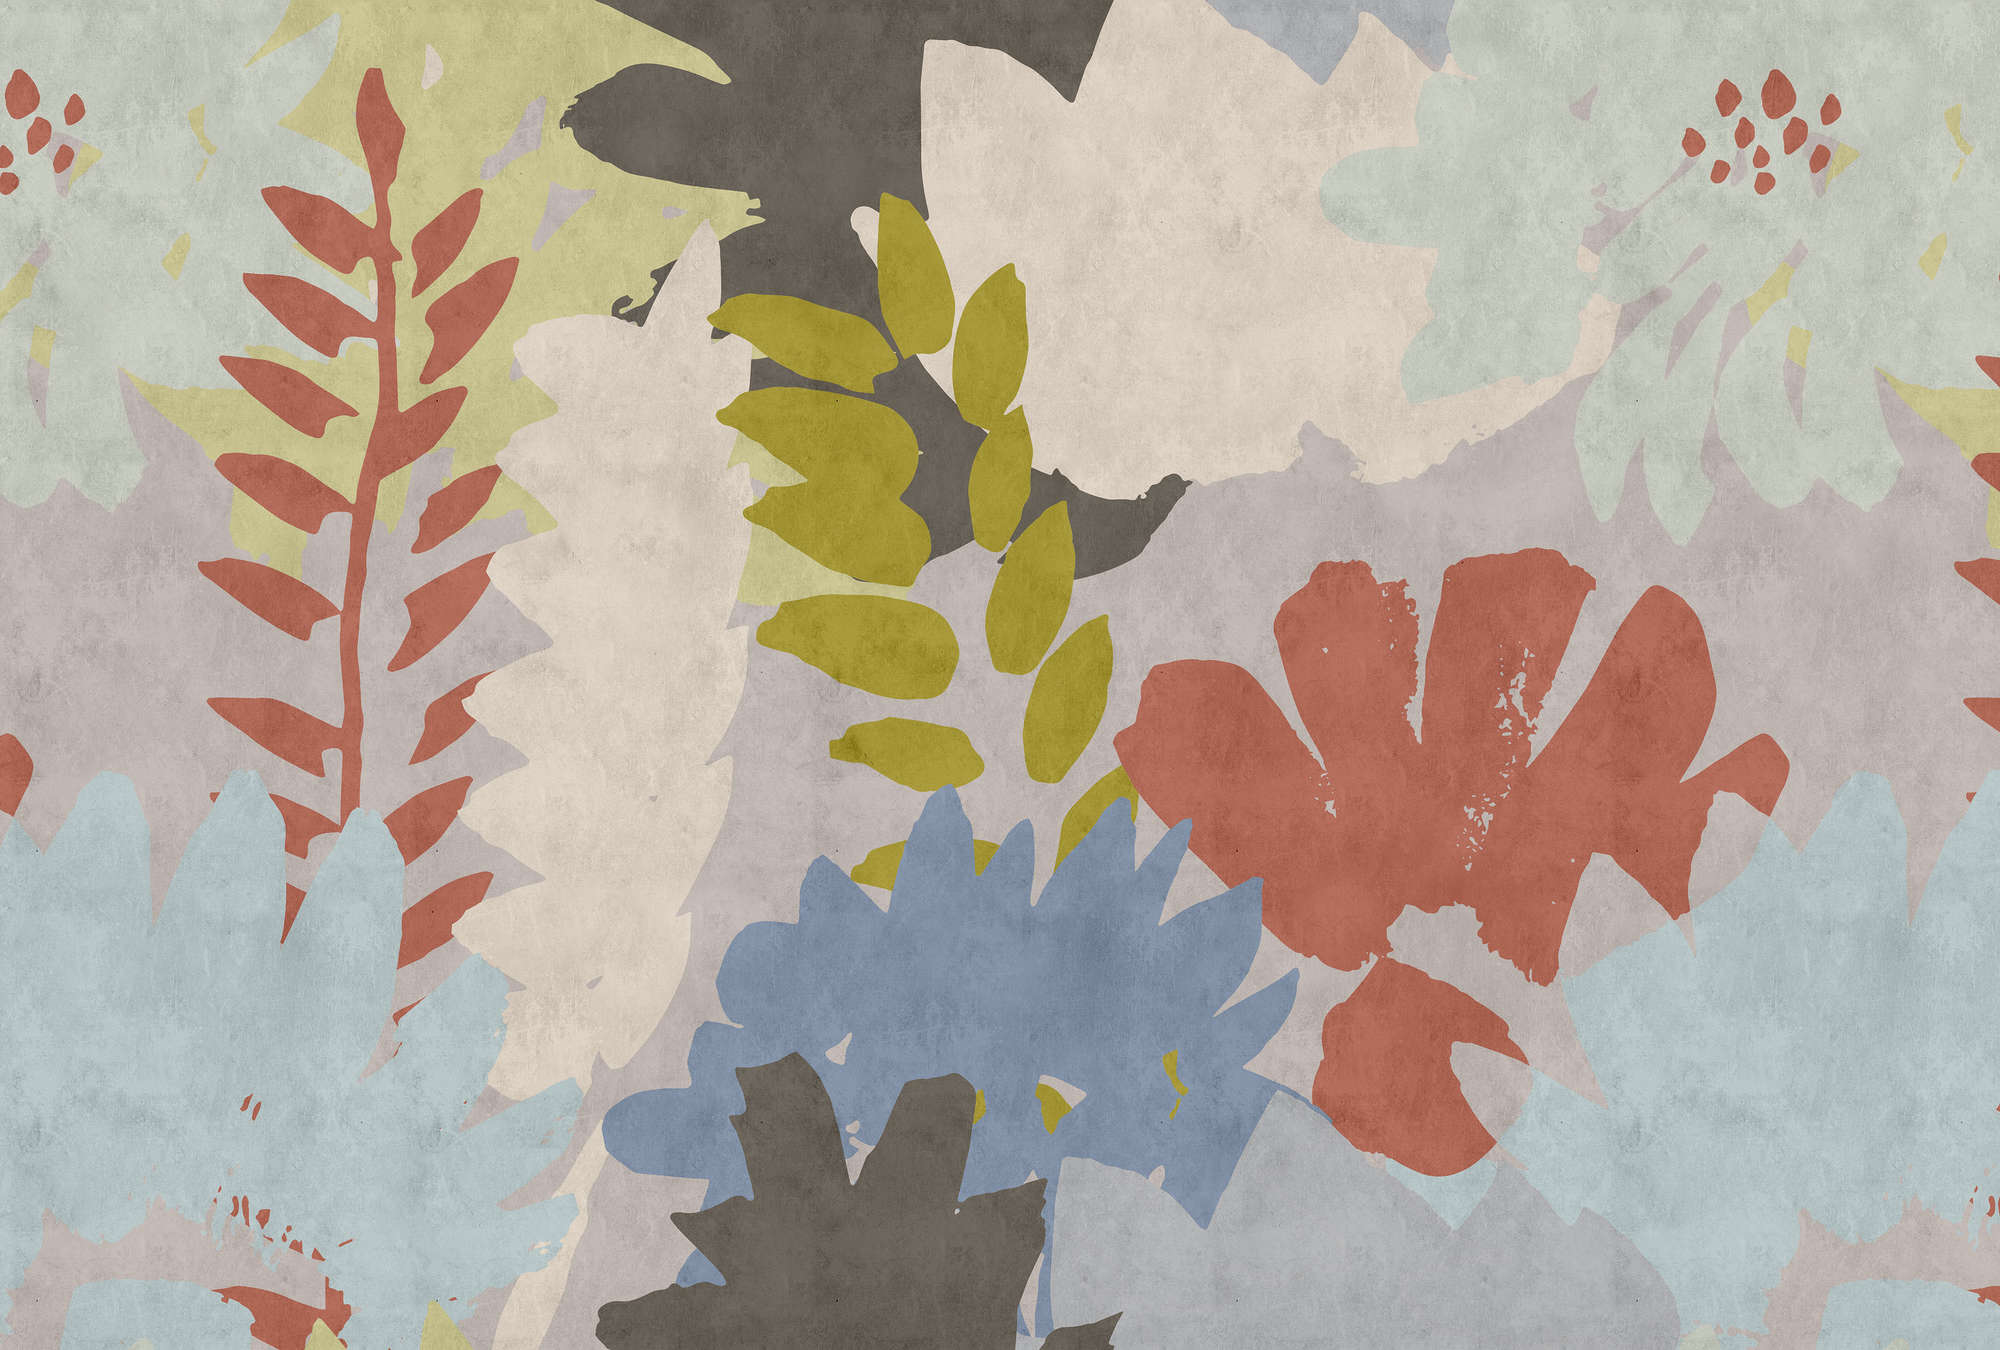             Collage Floral 3 - Papel pintado abstracto en estructura de papel secante con motivo de hojas - Azul, Crema | Estructura No Tejido
        